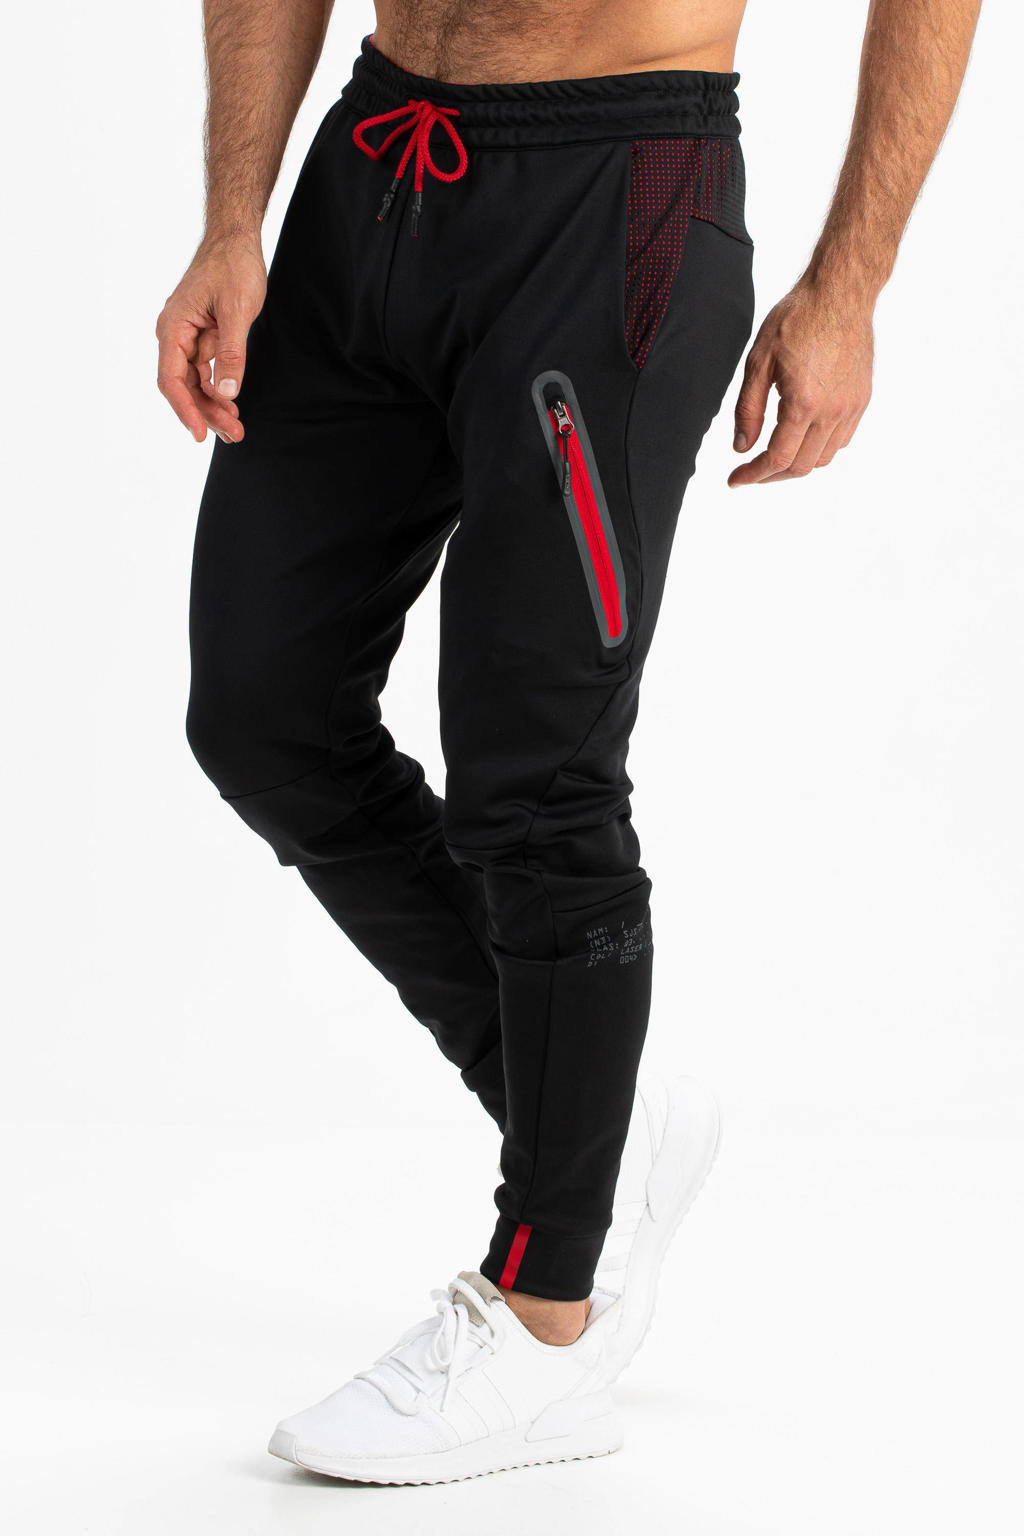 Zwart en rode heren Sjeng Sports sportbroek Yann van polyester met elastische tailleband met koord